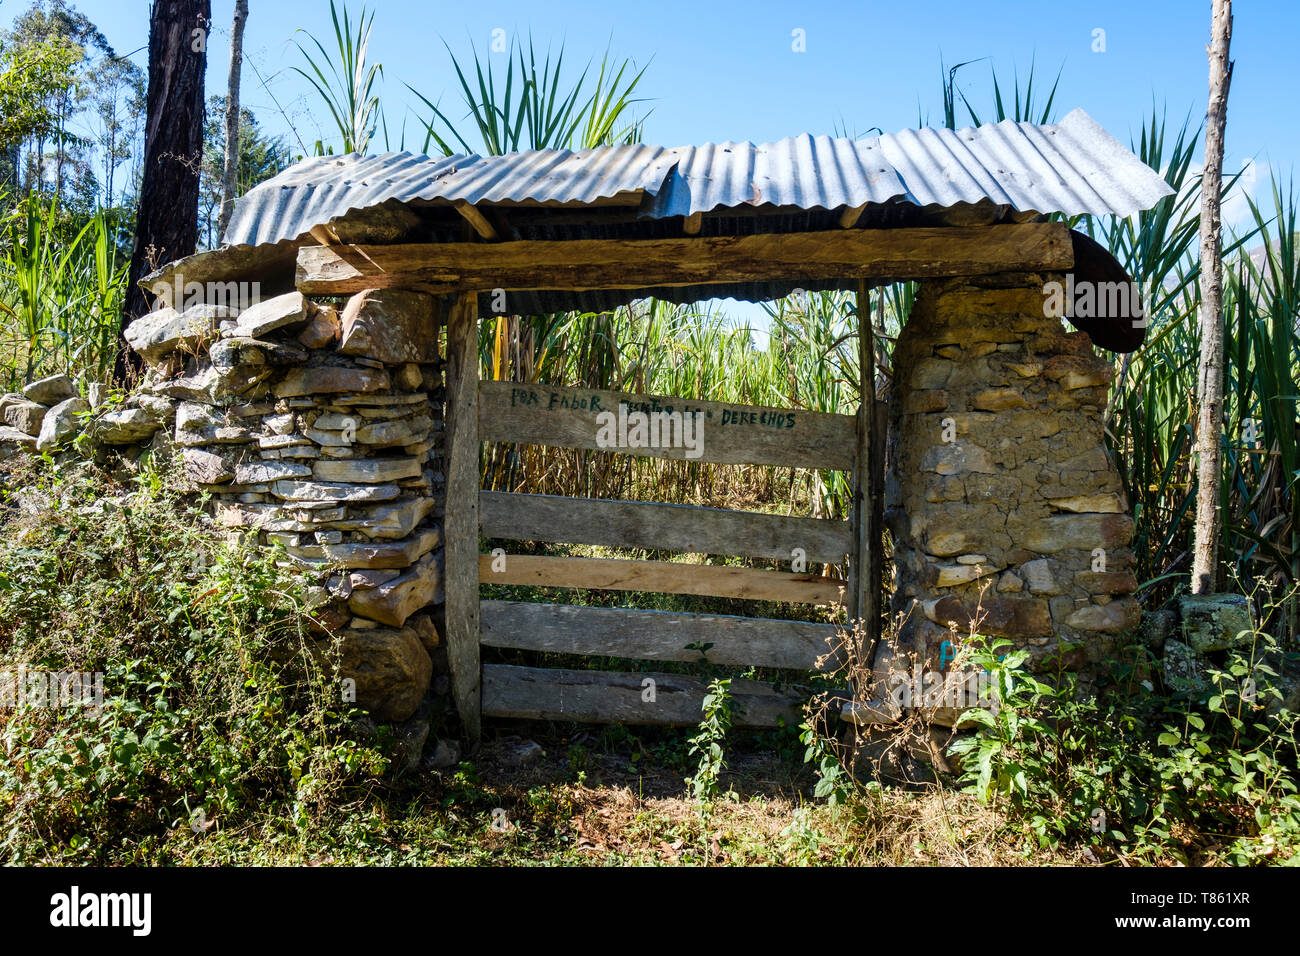 Bauernhof Tür mit einem schriftlichen Legende anspruchsvolle Achtung vor dem Privateigentum, Gocta Wasserfall Wanderung auf der Provinz Chachapoyas, Amazonas Region, Peru gesehen Stockfoto